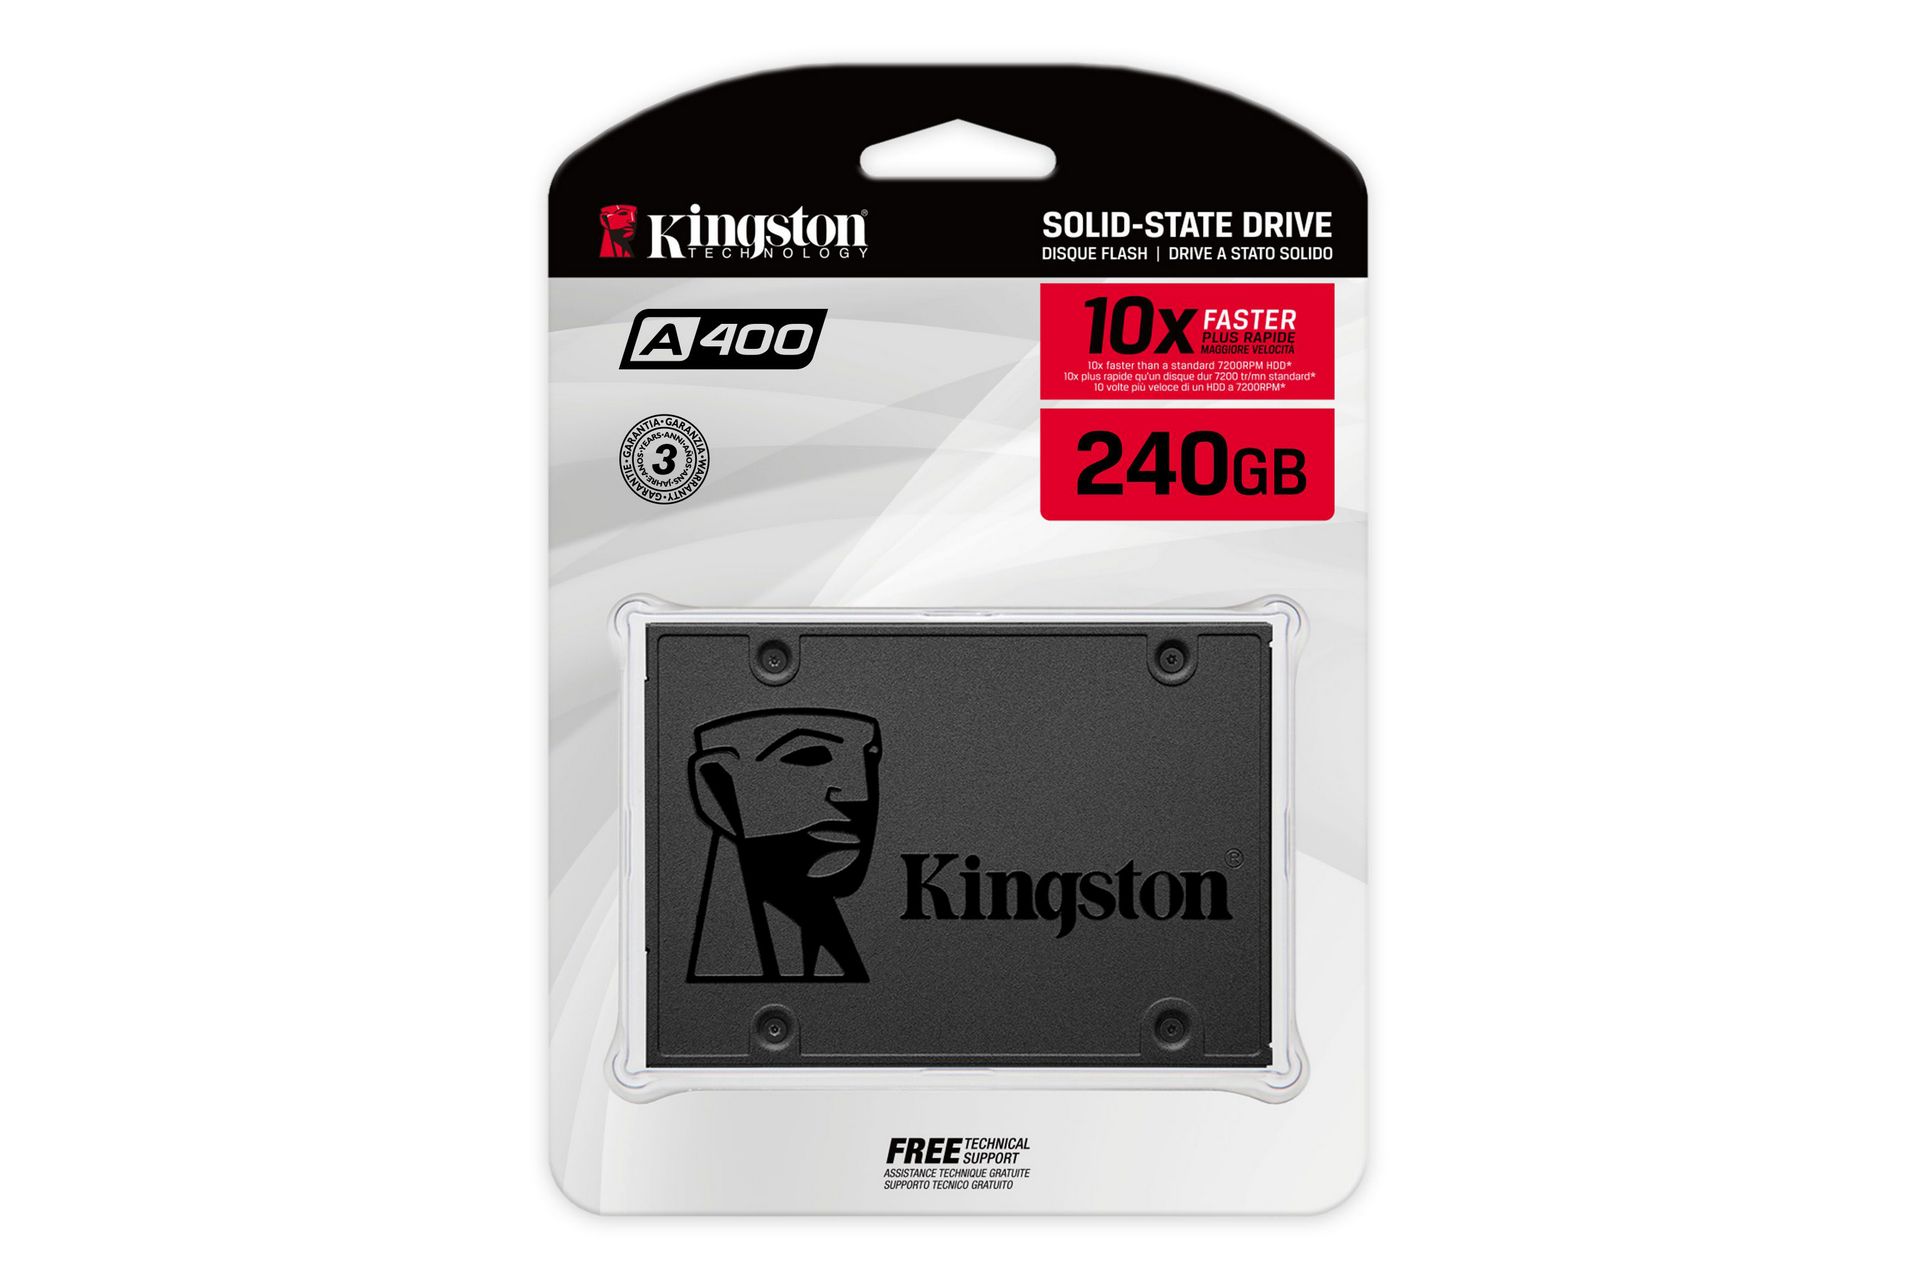 SSD KINGTON 240GB SATA